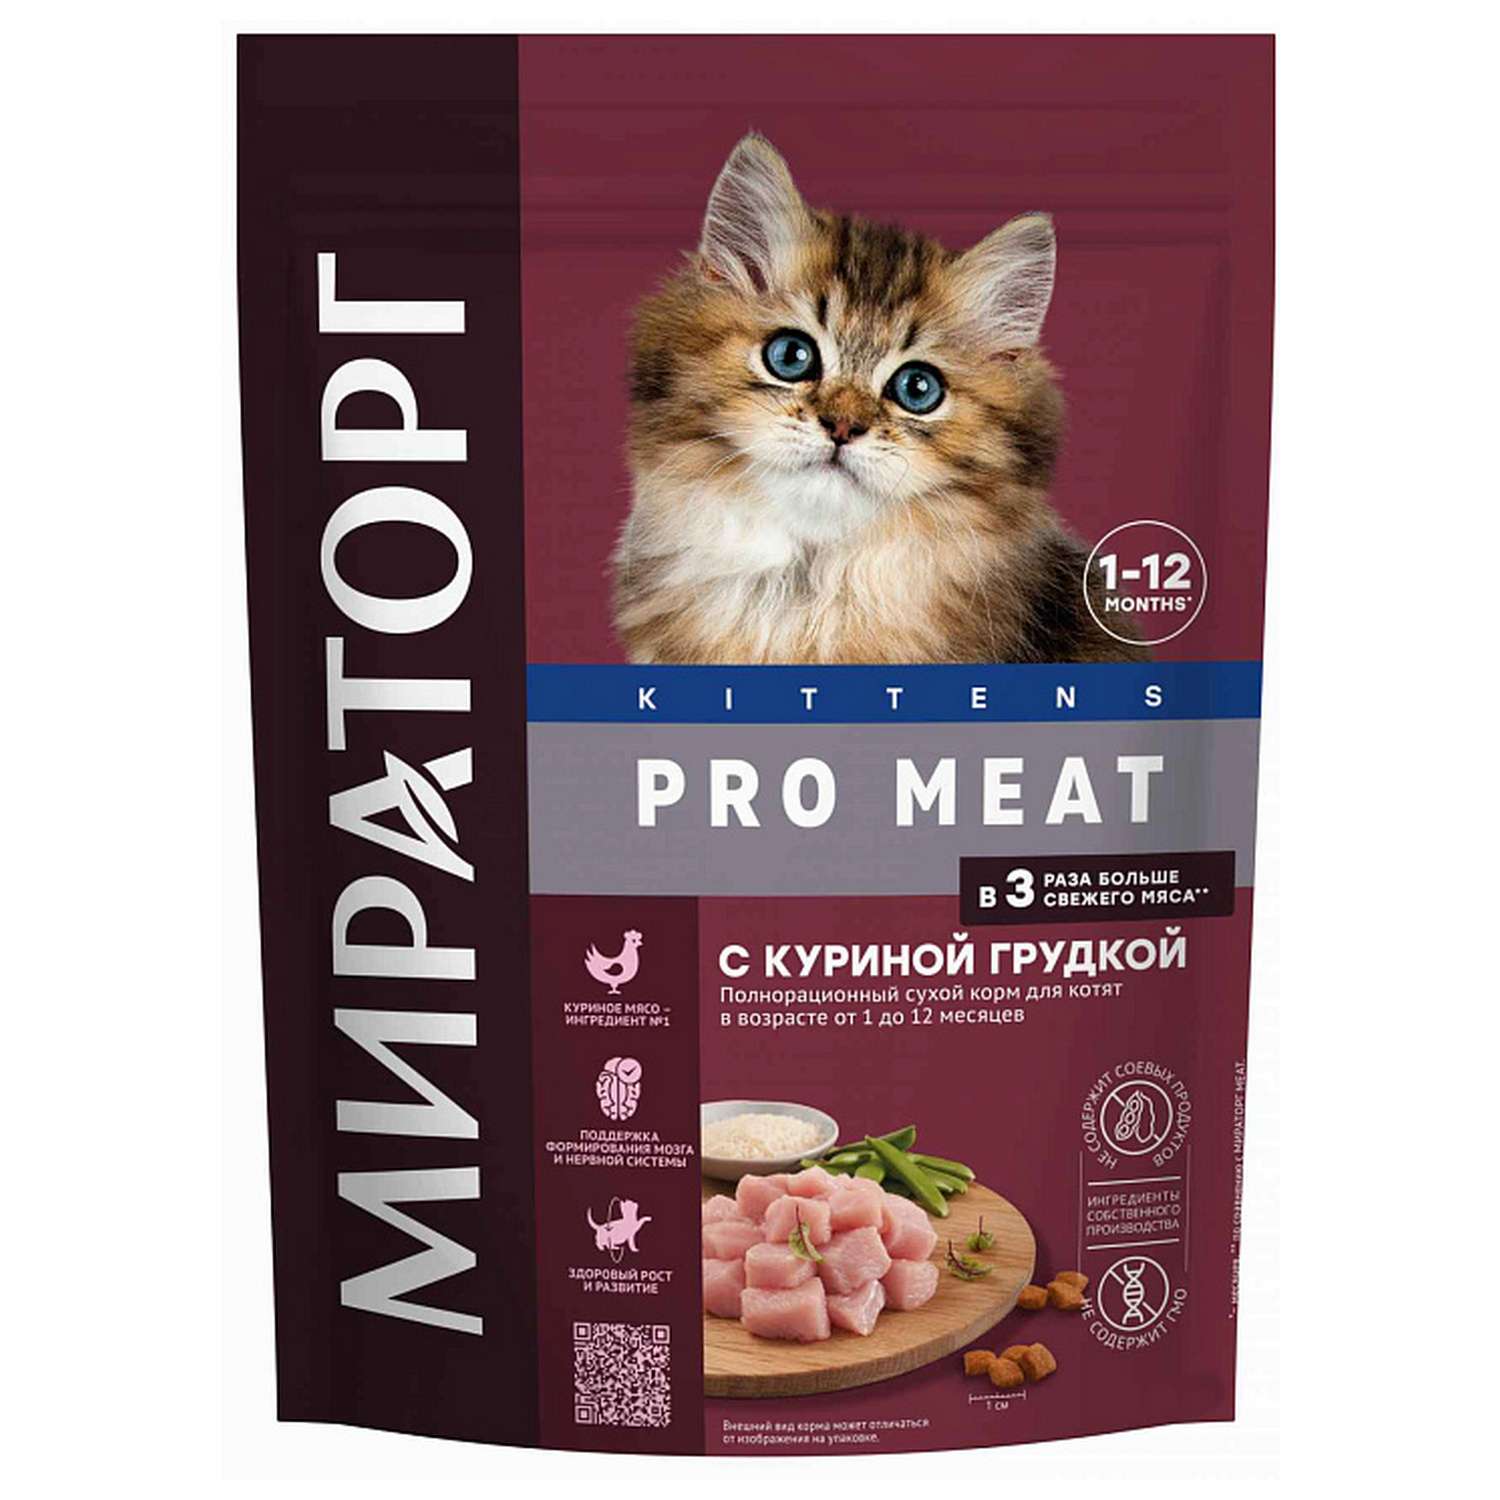 Полнорационный сухой корм WINNER Pro Meat с куриной грудкой для котят в возрасте от 1 до 12 месяцев 1.5 кг - фото 1